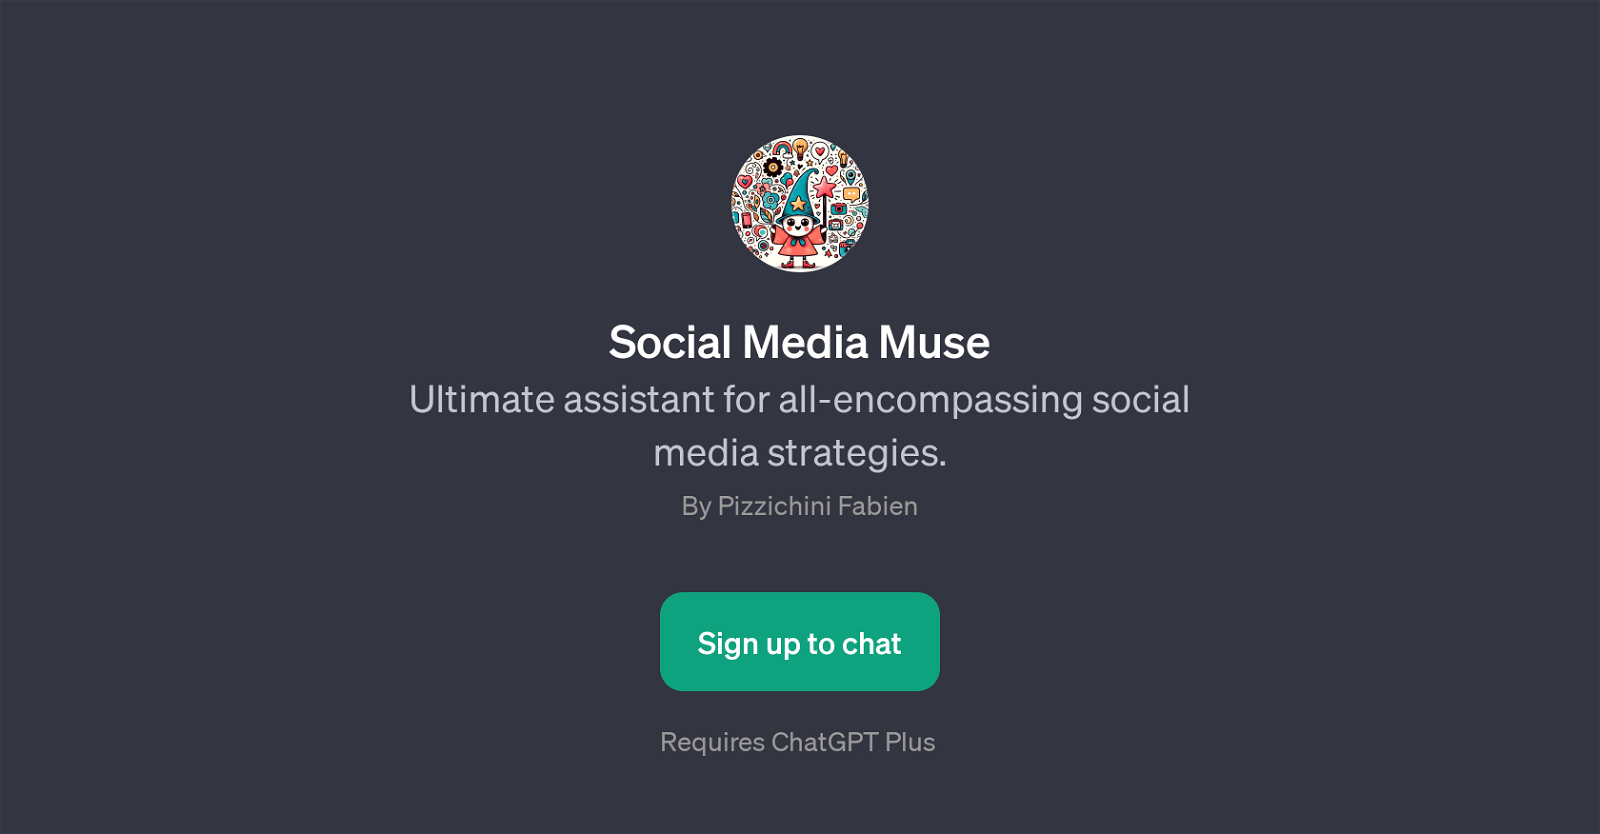 Social Media Muse website